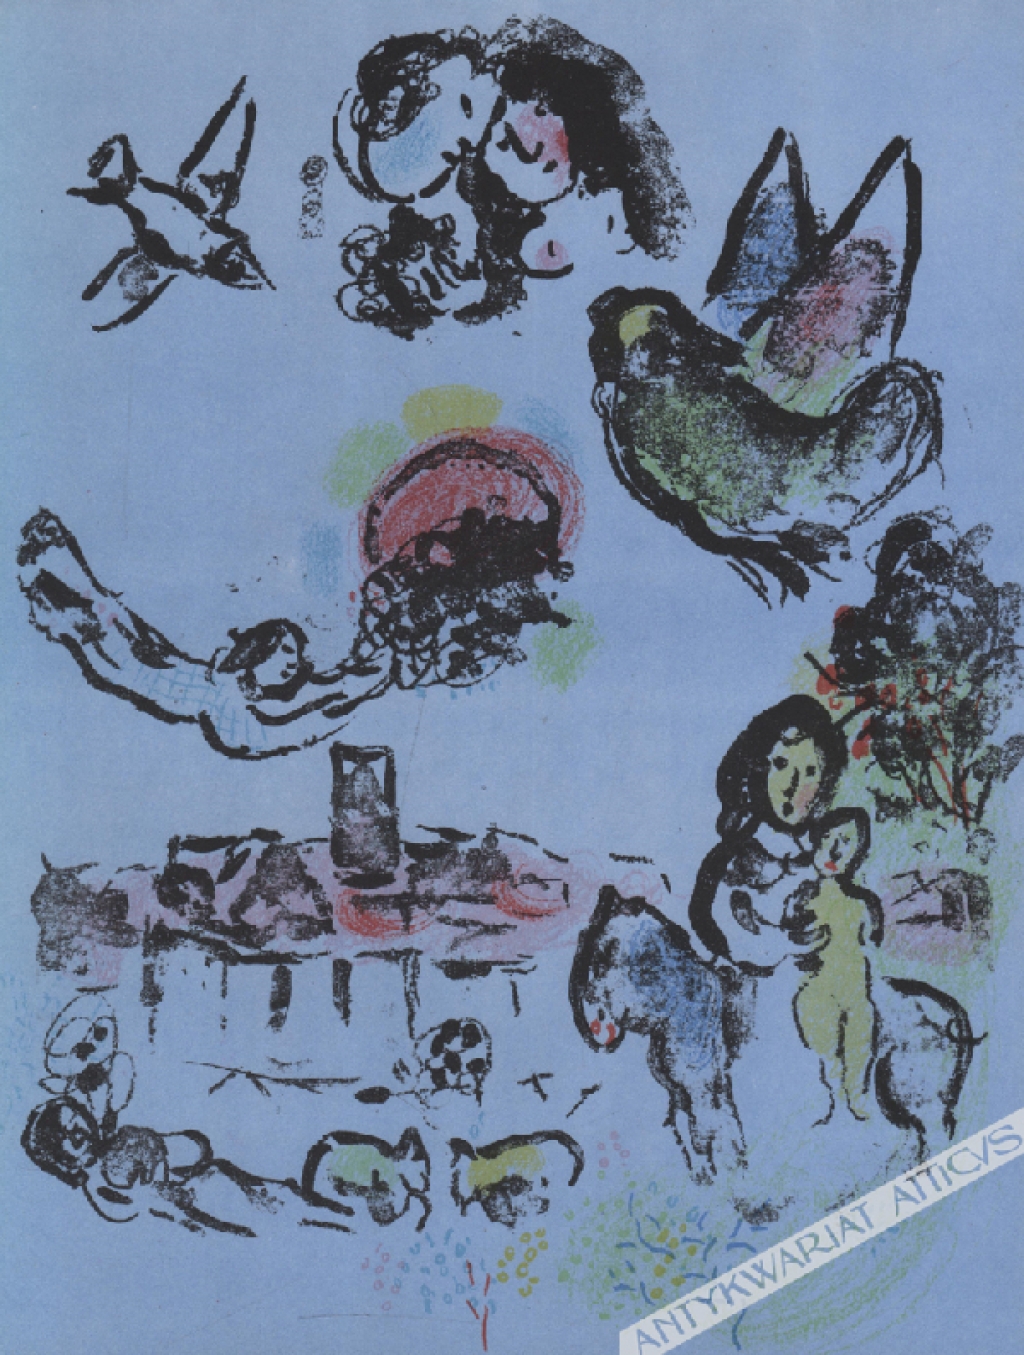 [grafika, 1963] Nocturne at Vence